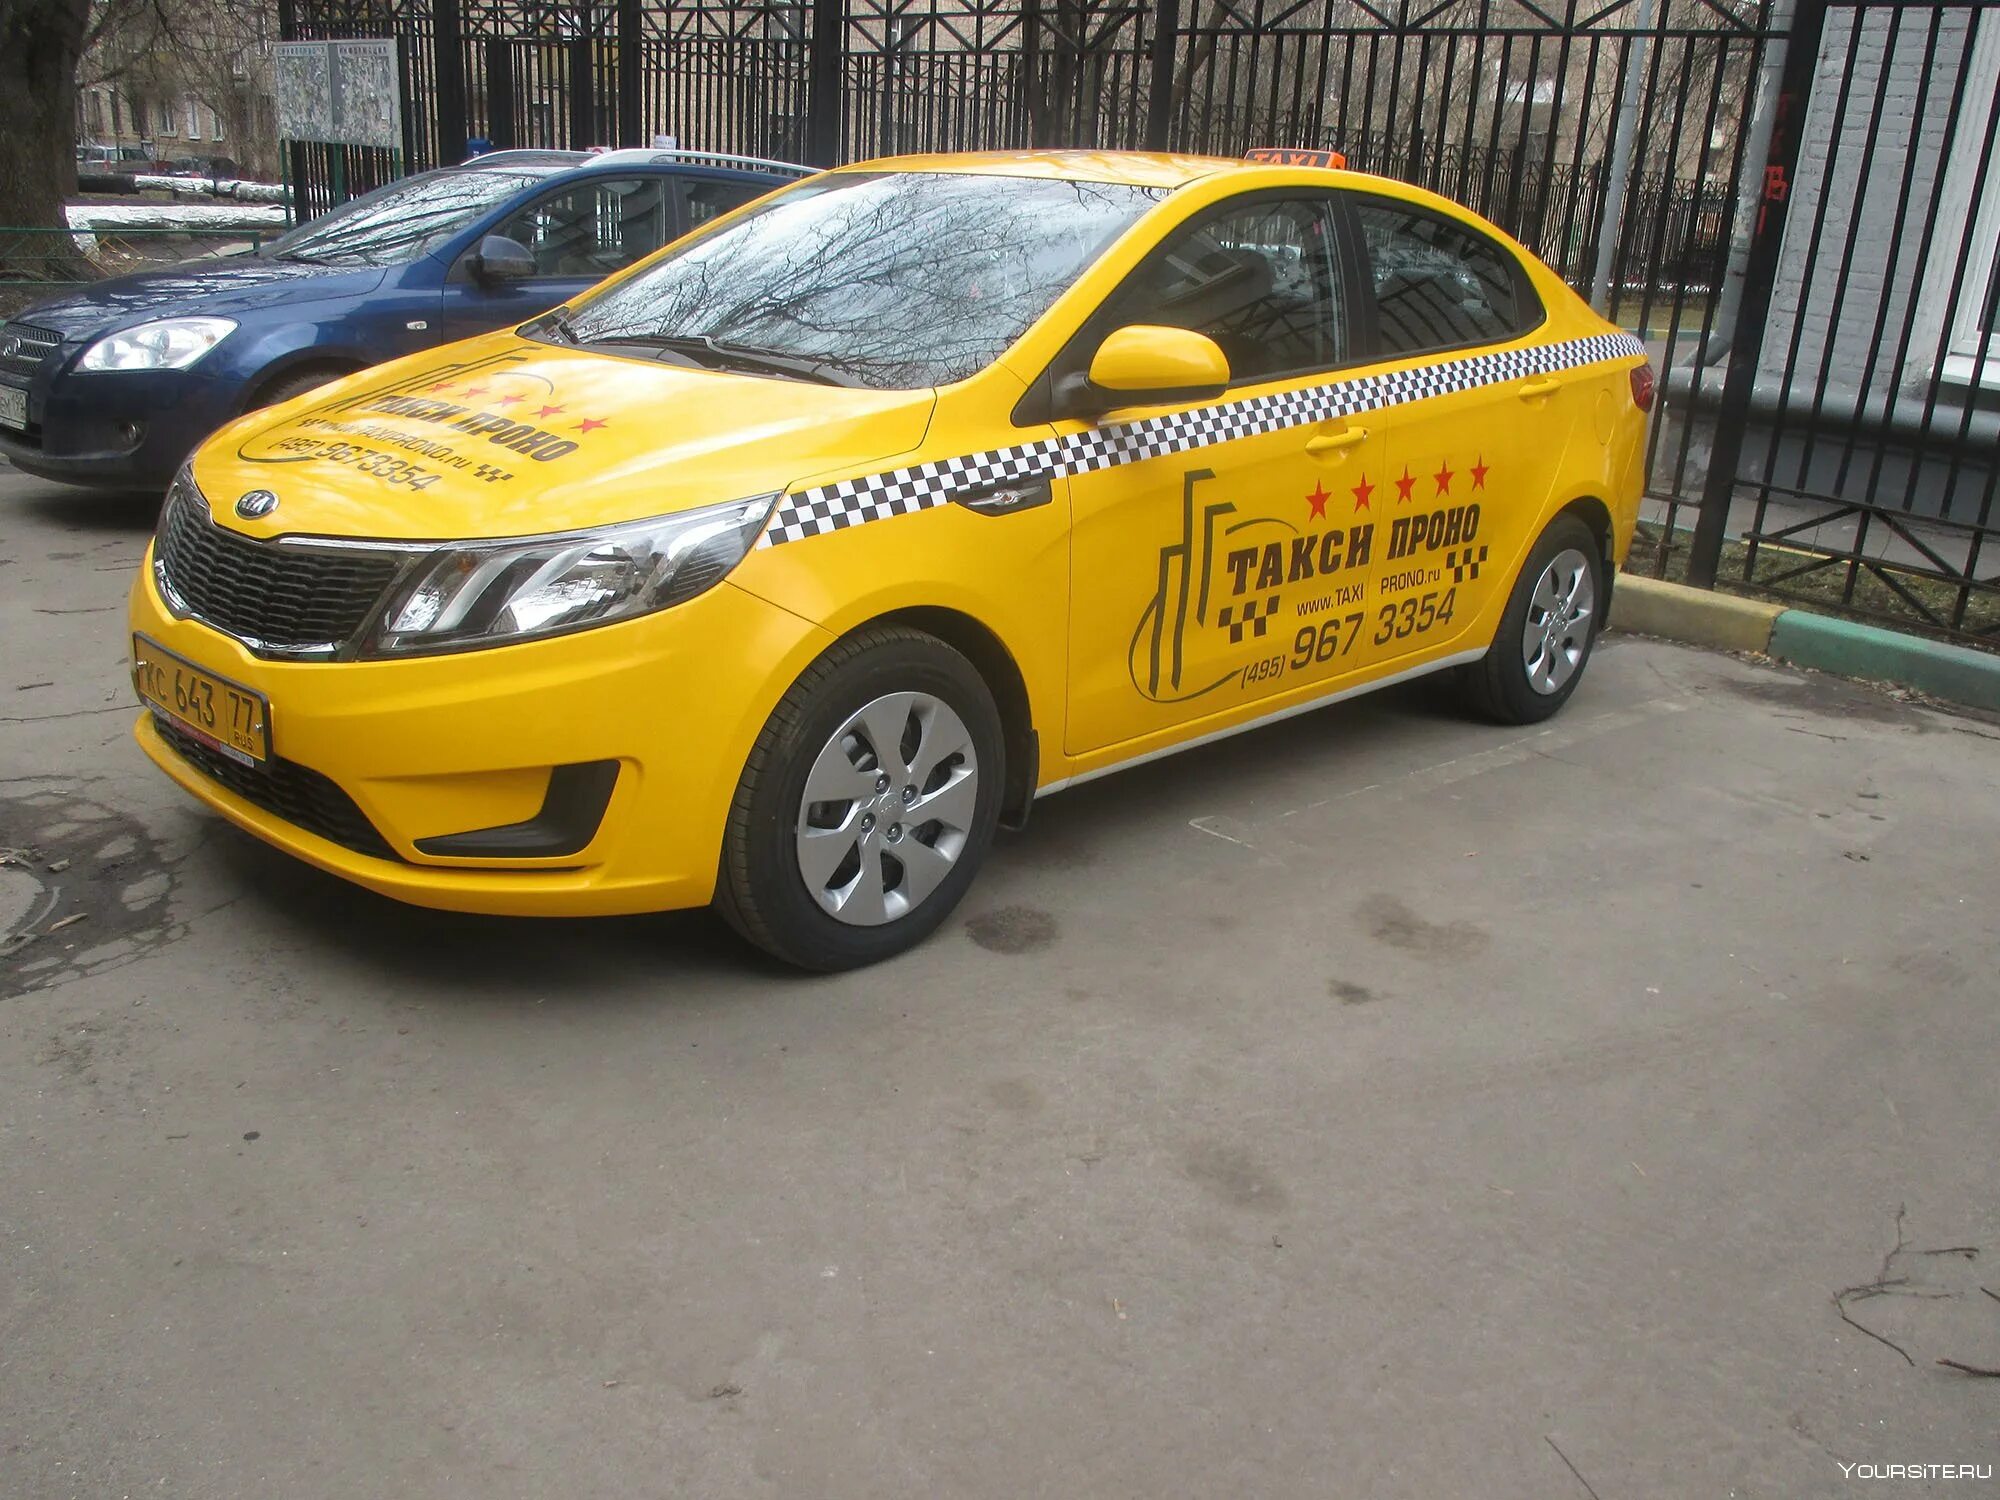 Сертифицированный таксопарк. Машина под такси. Машина "такси". Автопарк такси. Недорогие машины для такси.